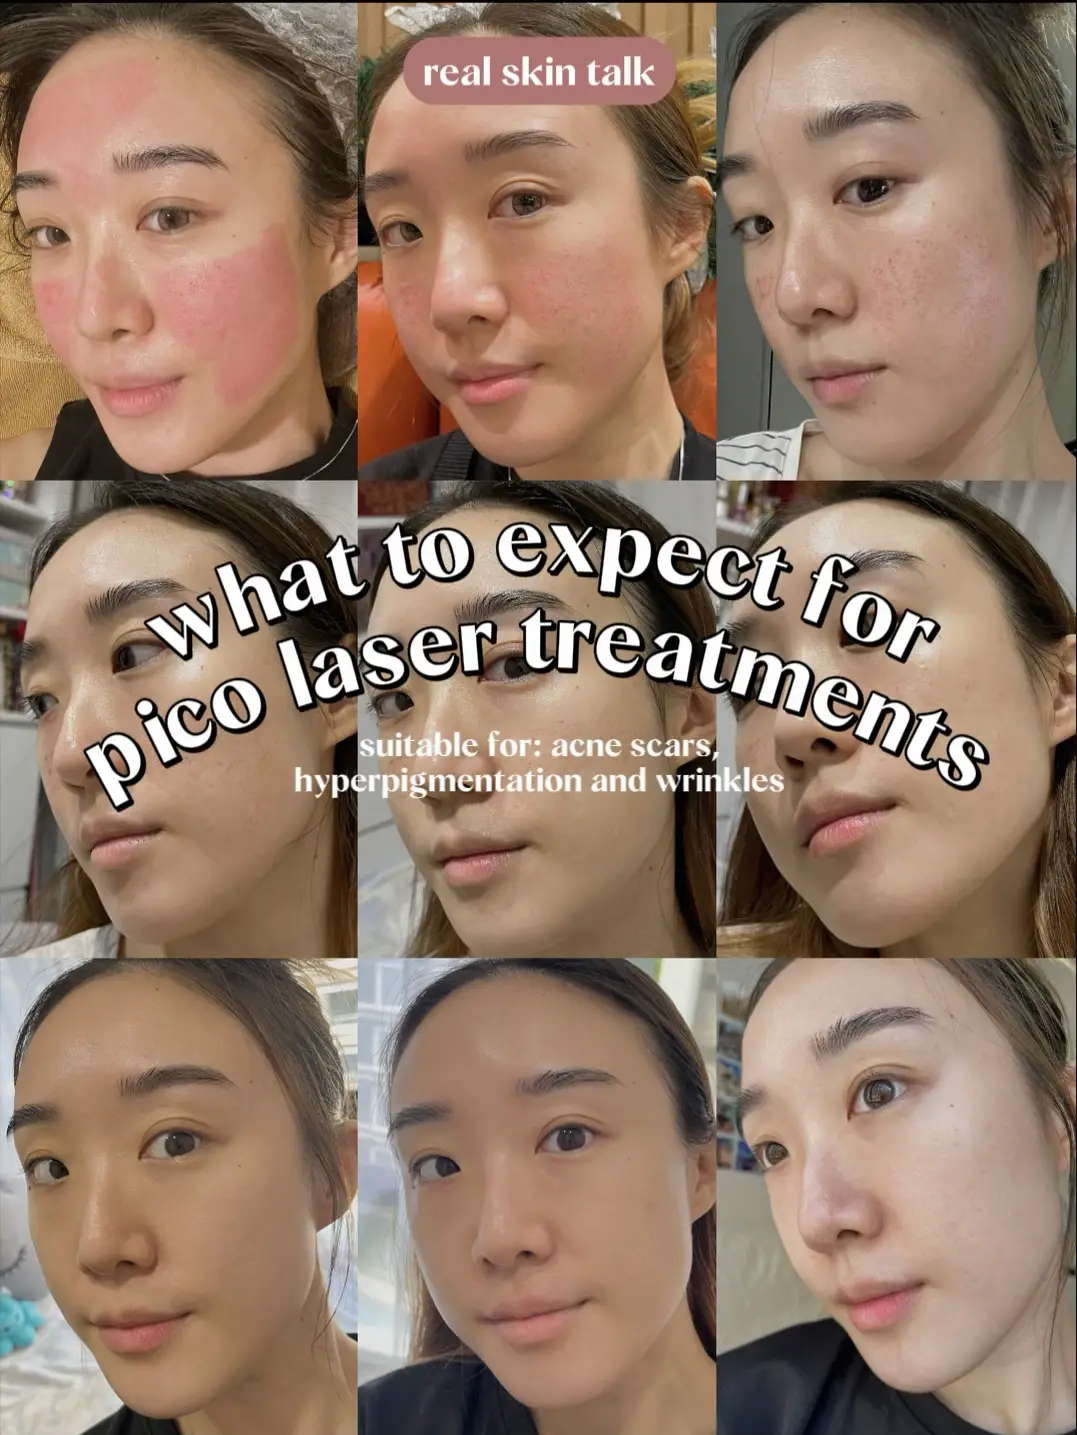 Pico Laser after 2 wks⚡️ Let’s talk skin treatments's images(0)